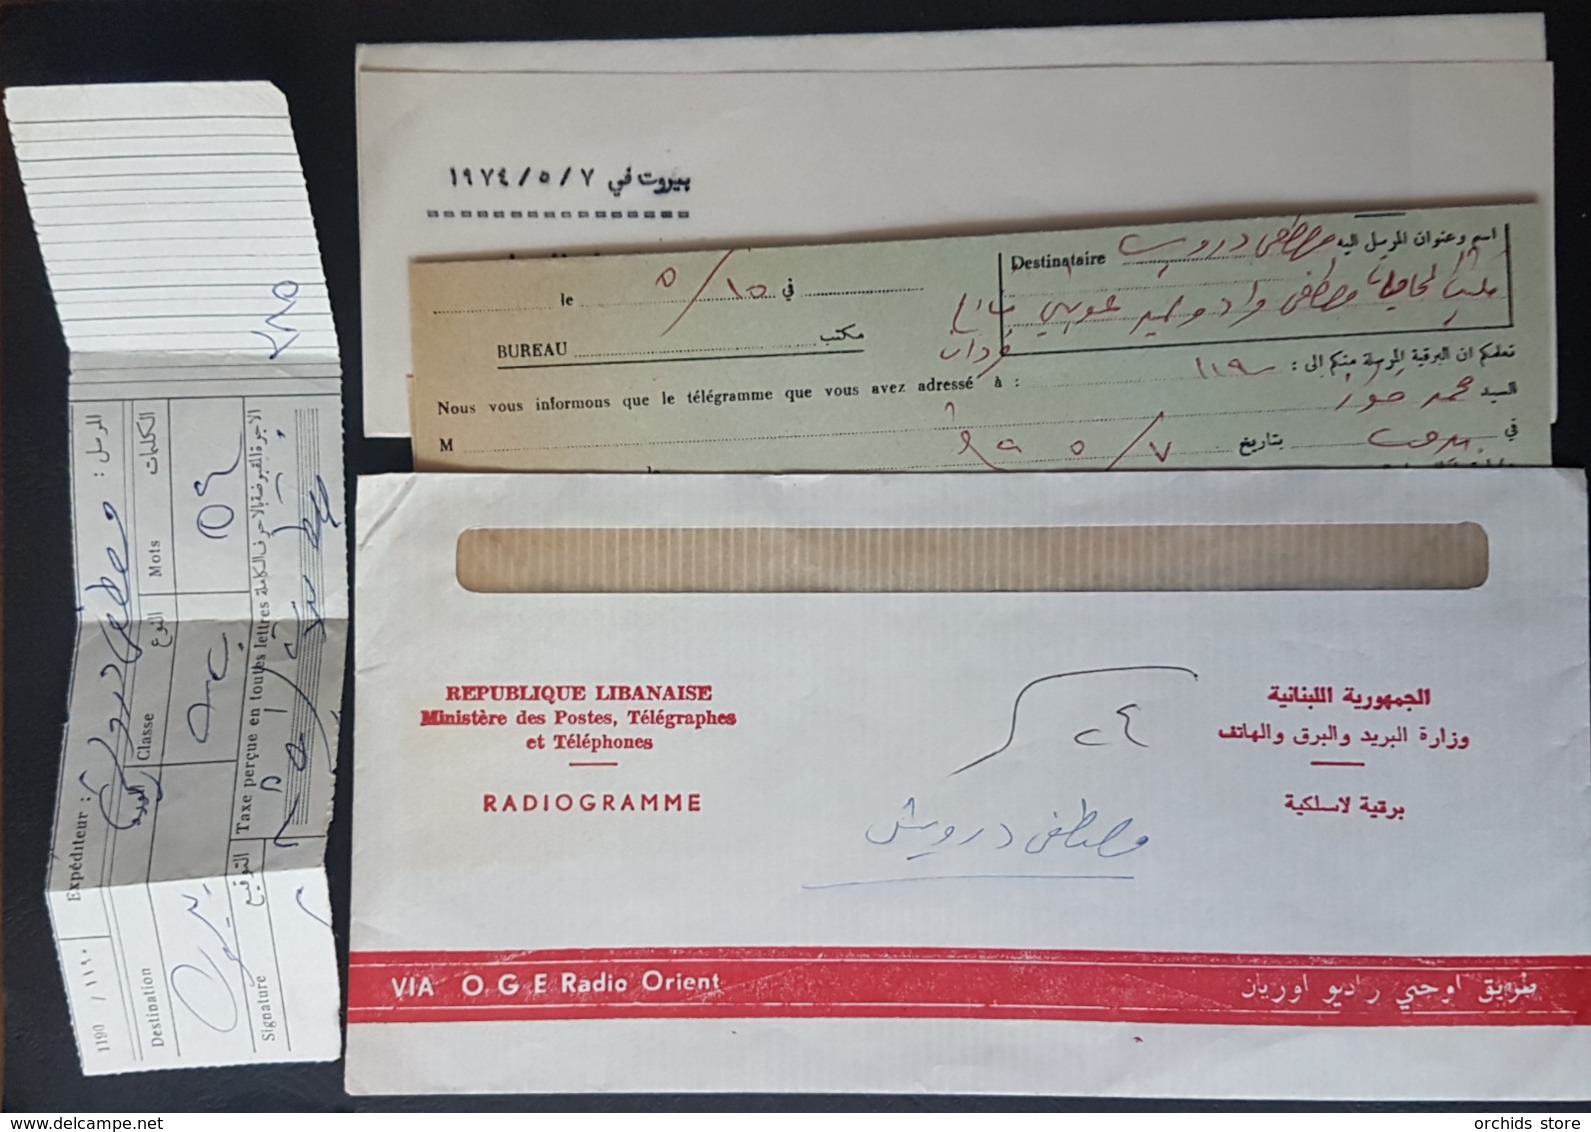 LNPC Original Cover +Letter +Message +Receipt W/ Two Diff Postal Cancels Blue & Black BEYROUTH CENTRE TELEGRAPHIQUE 1974 - Lebanon